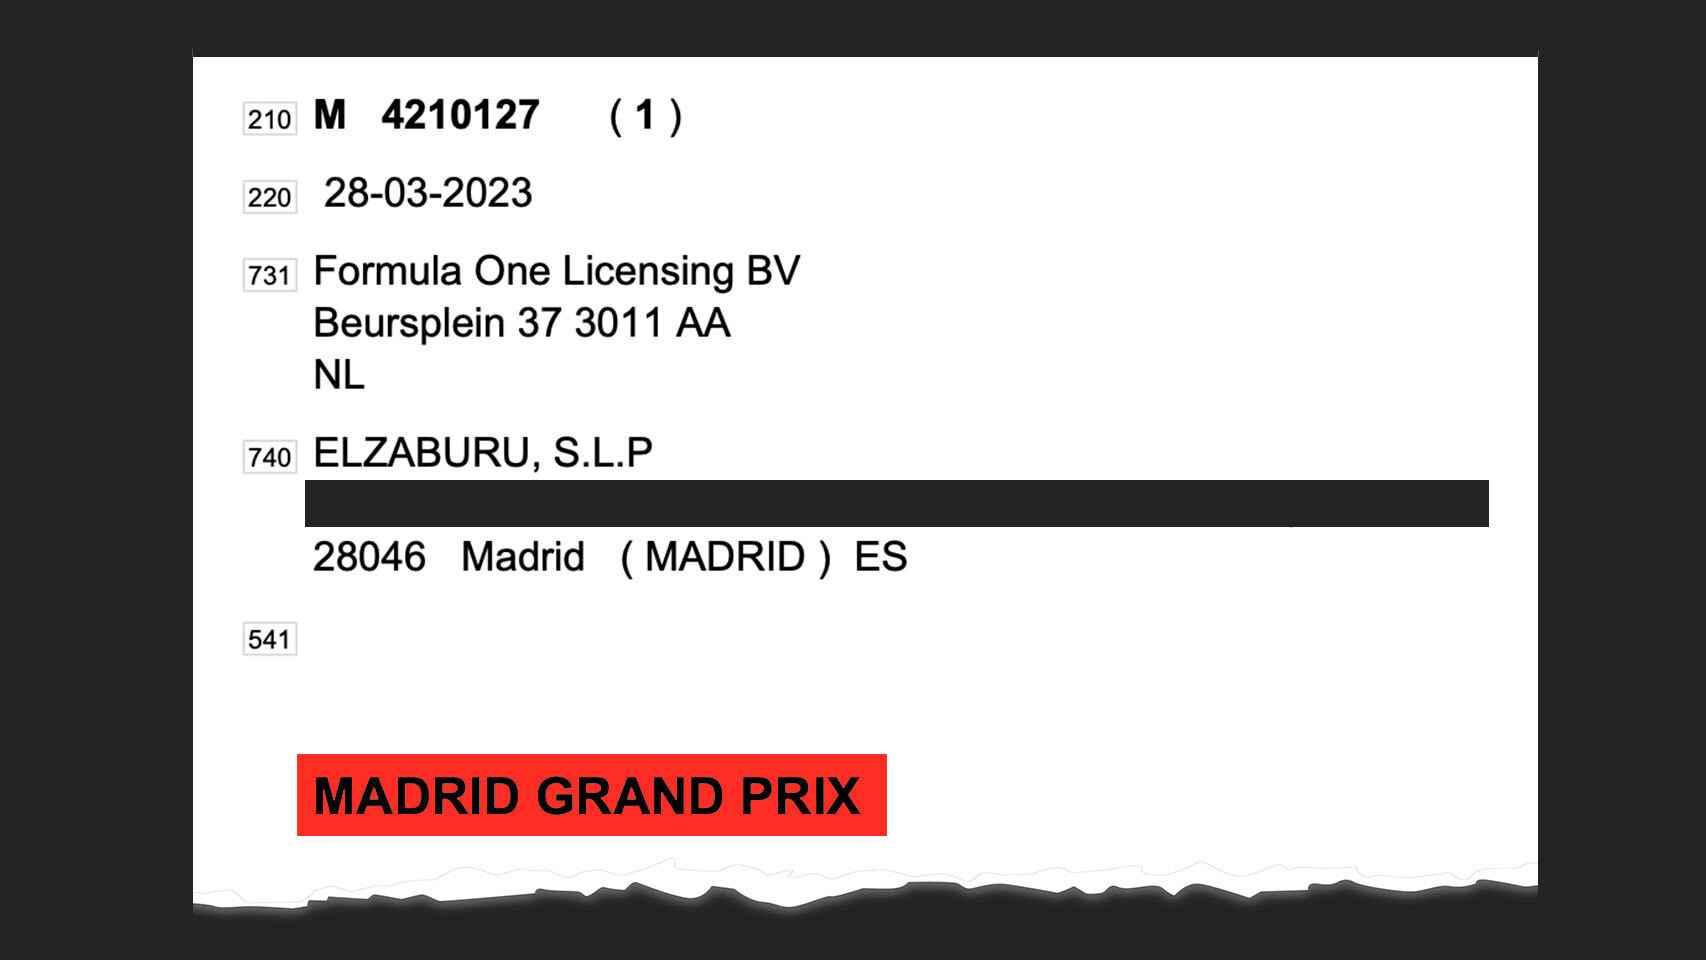 Captura del Boletín Oficial de la Propiedad Industrial con la marca 'Madrid Gran Prix'.